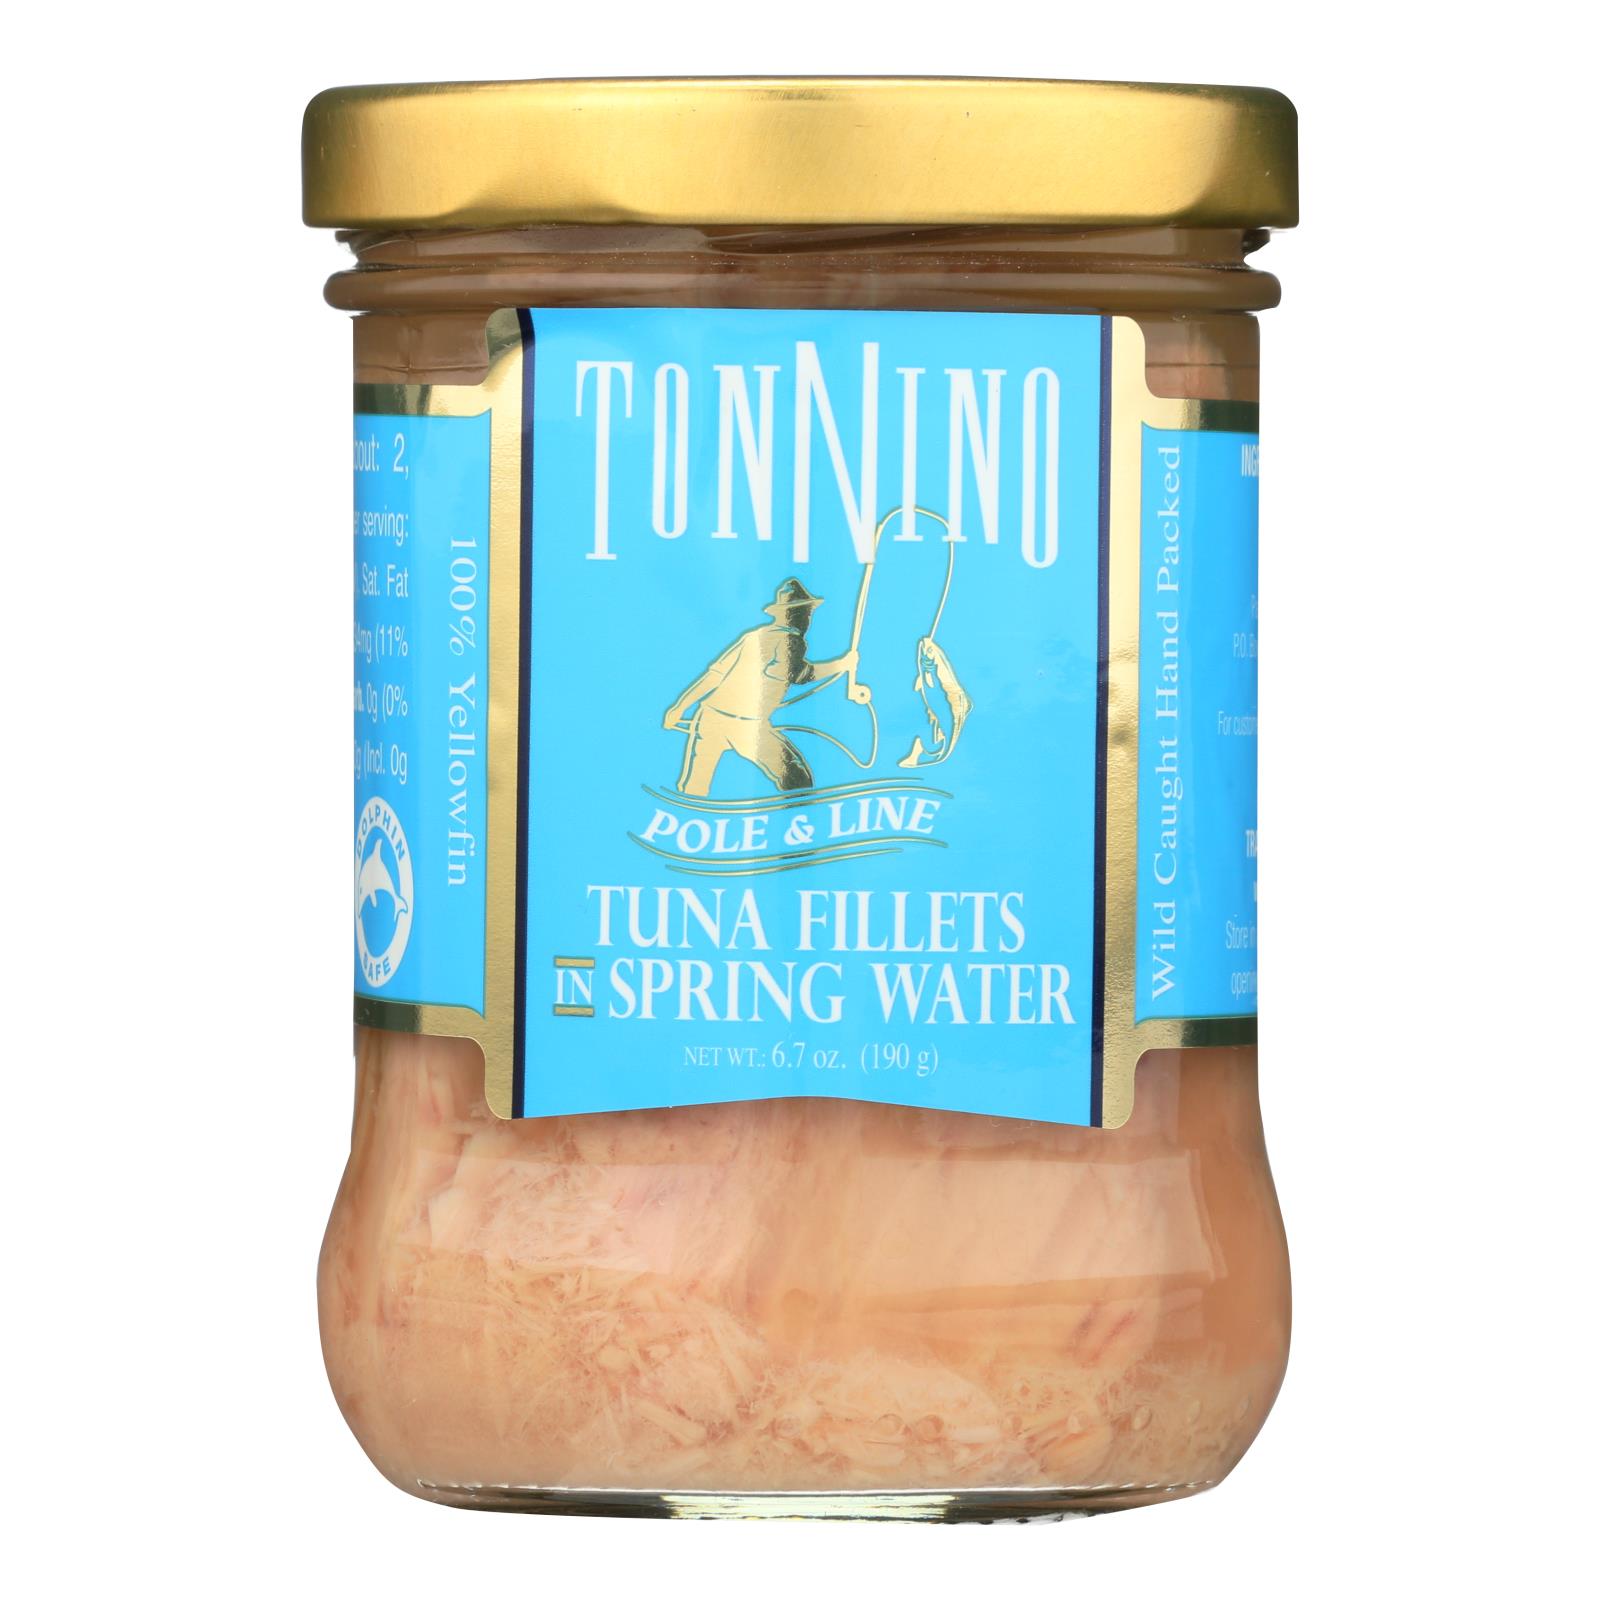 Tonnino Tuna - Tuna In Spring Water - 6개 묶음상품 - 6.7 OZ